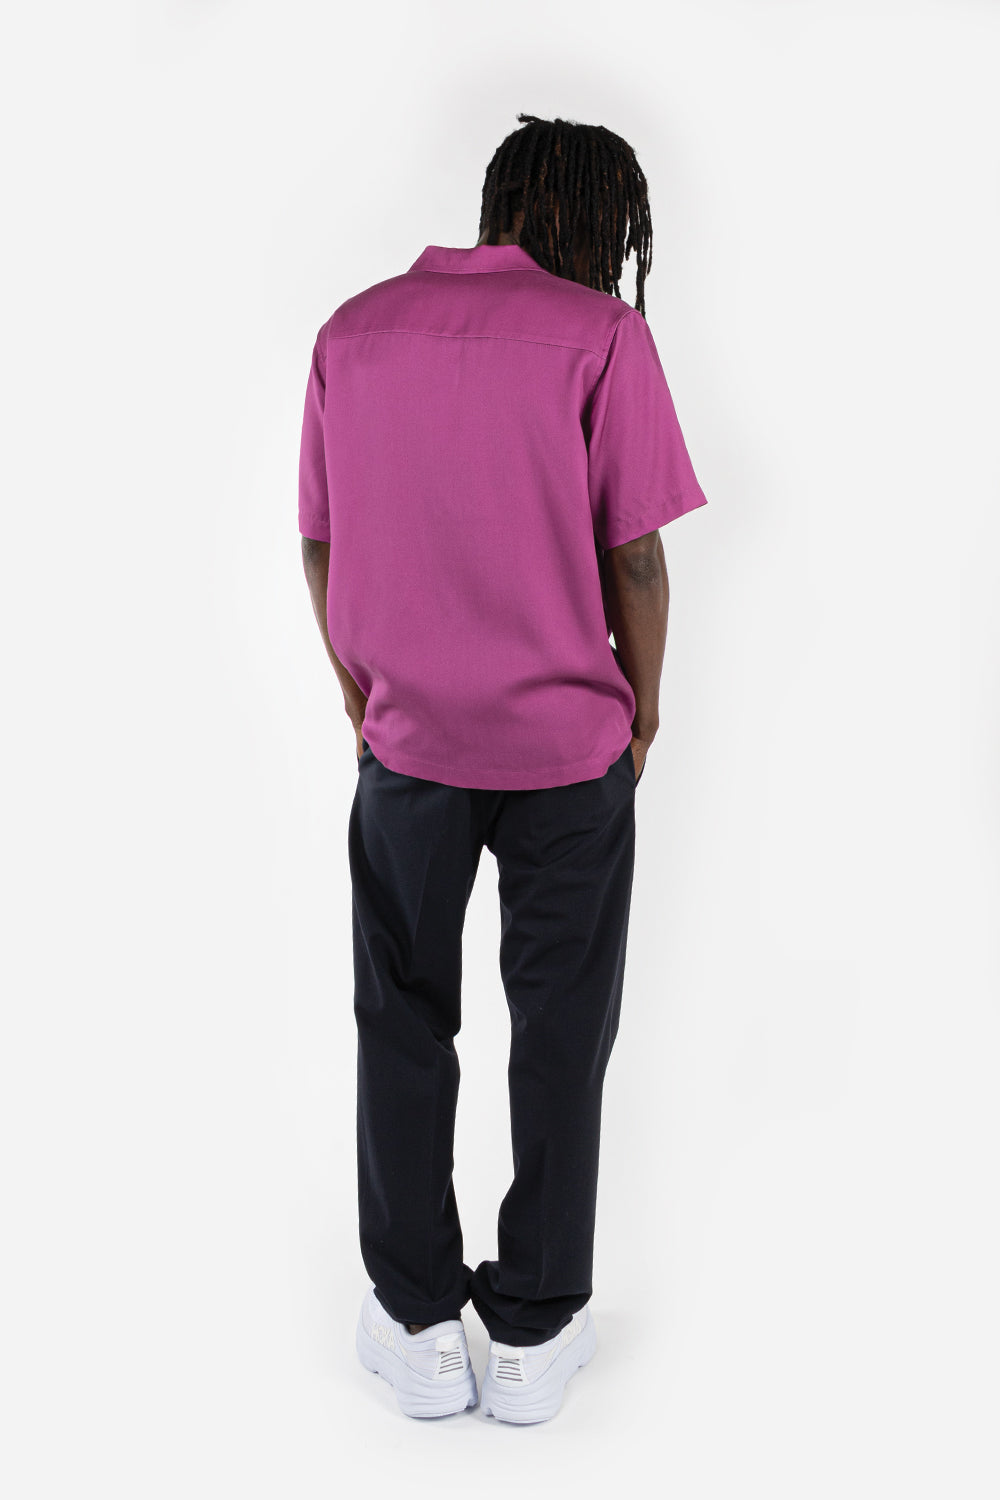 soulland-orson-shirt-purple-aop